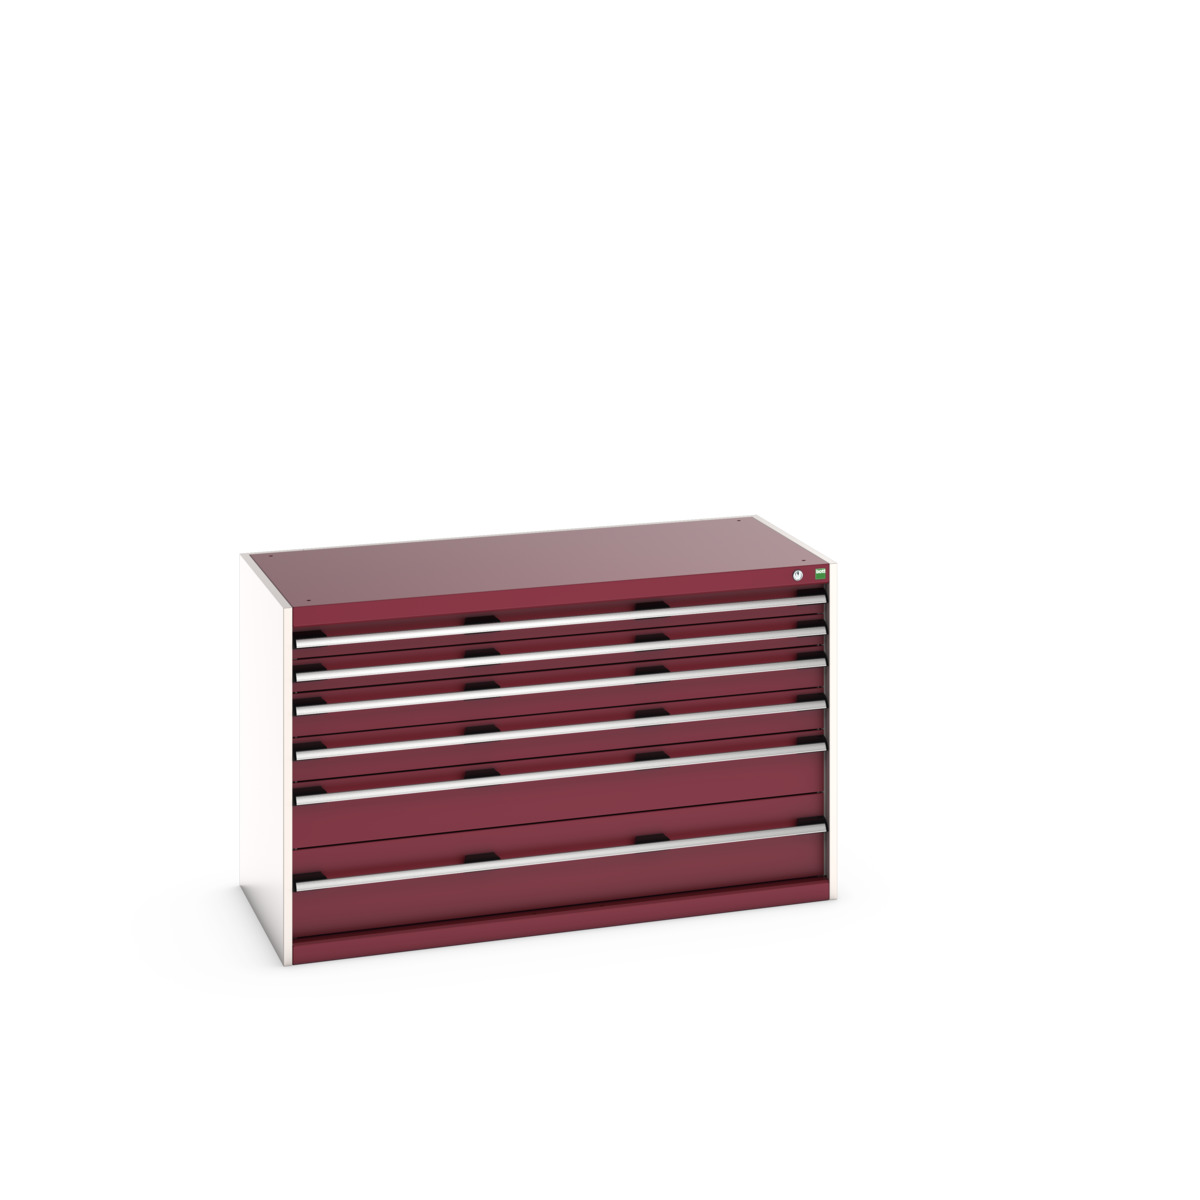 40022110.24V - cubio drawer cabinet